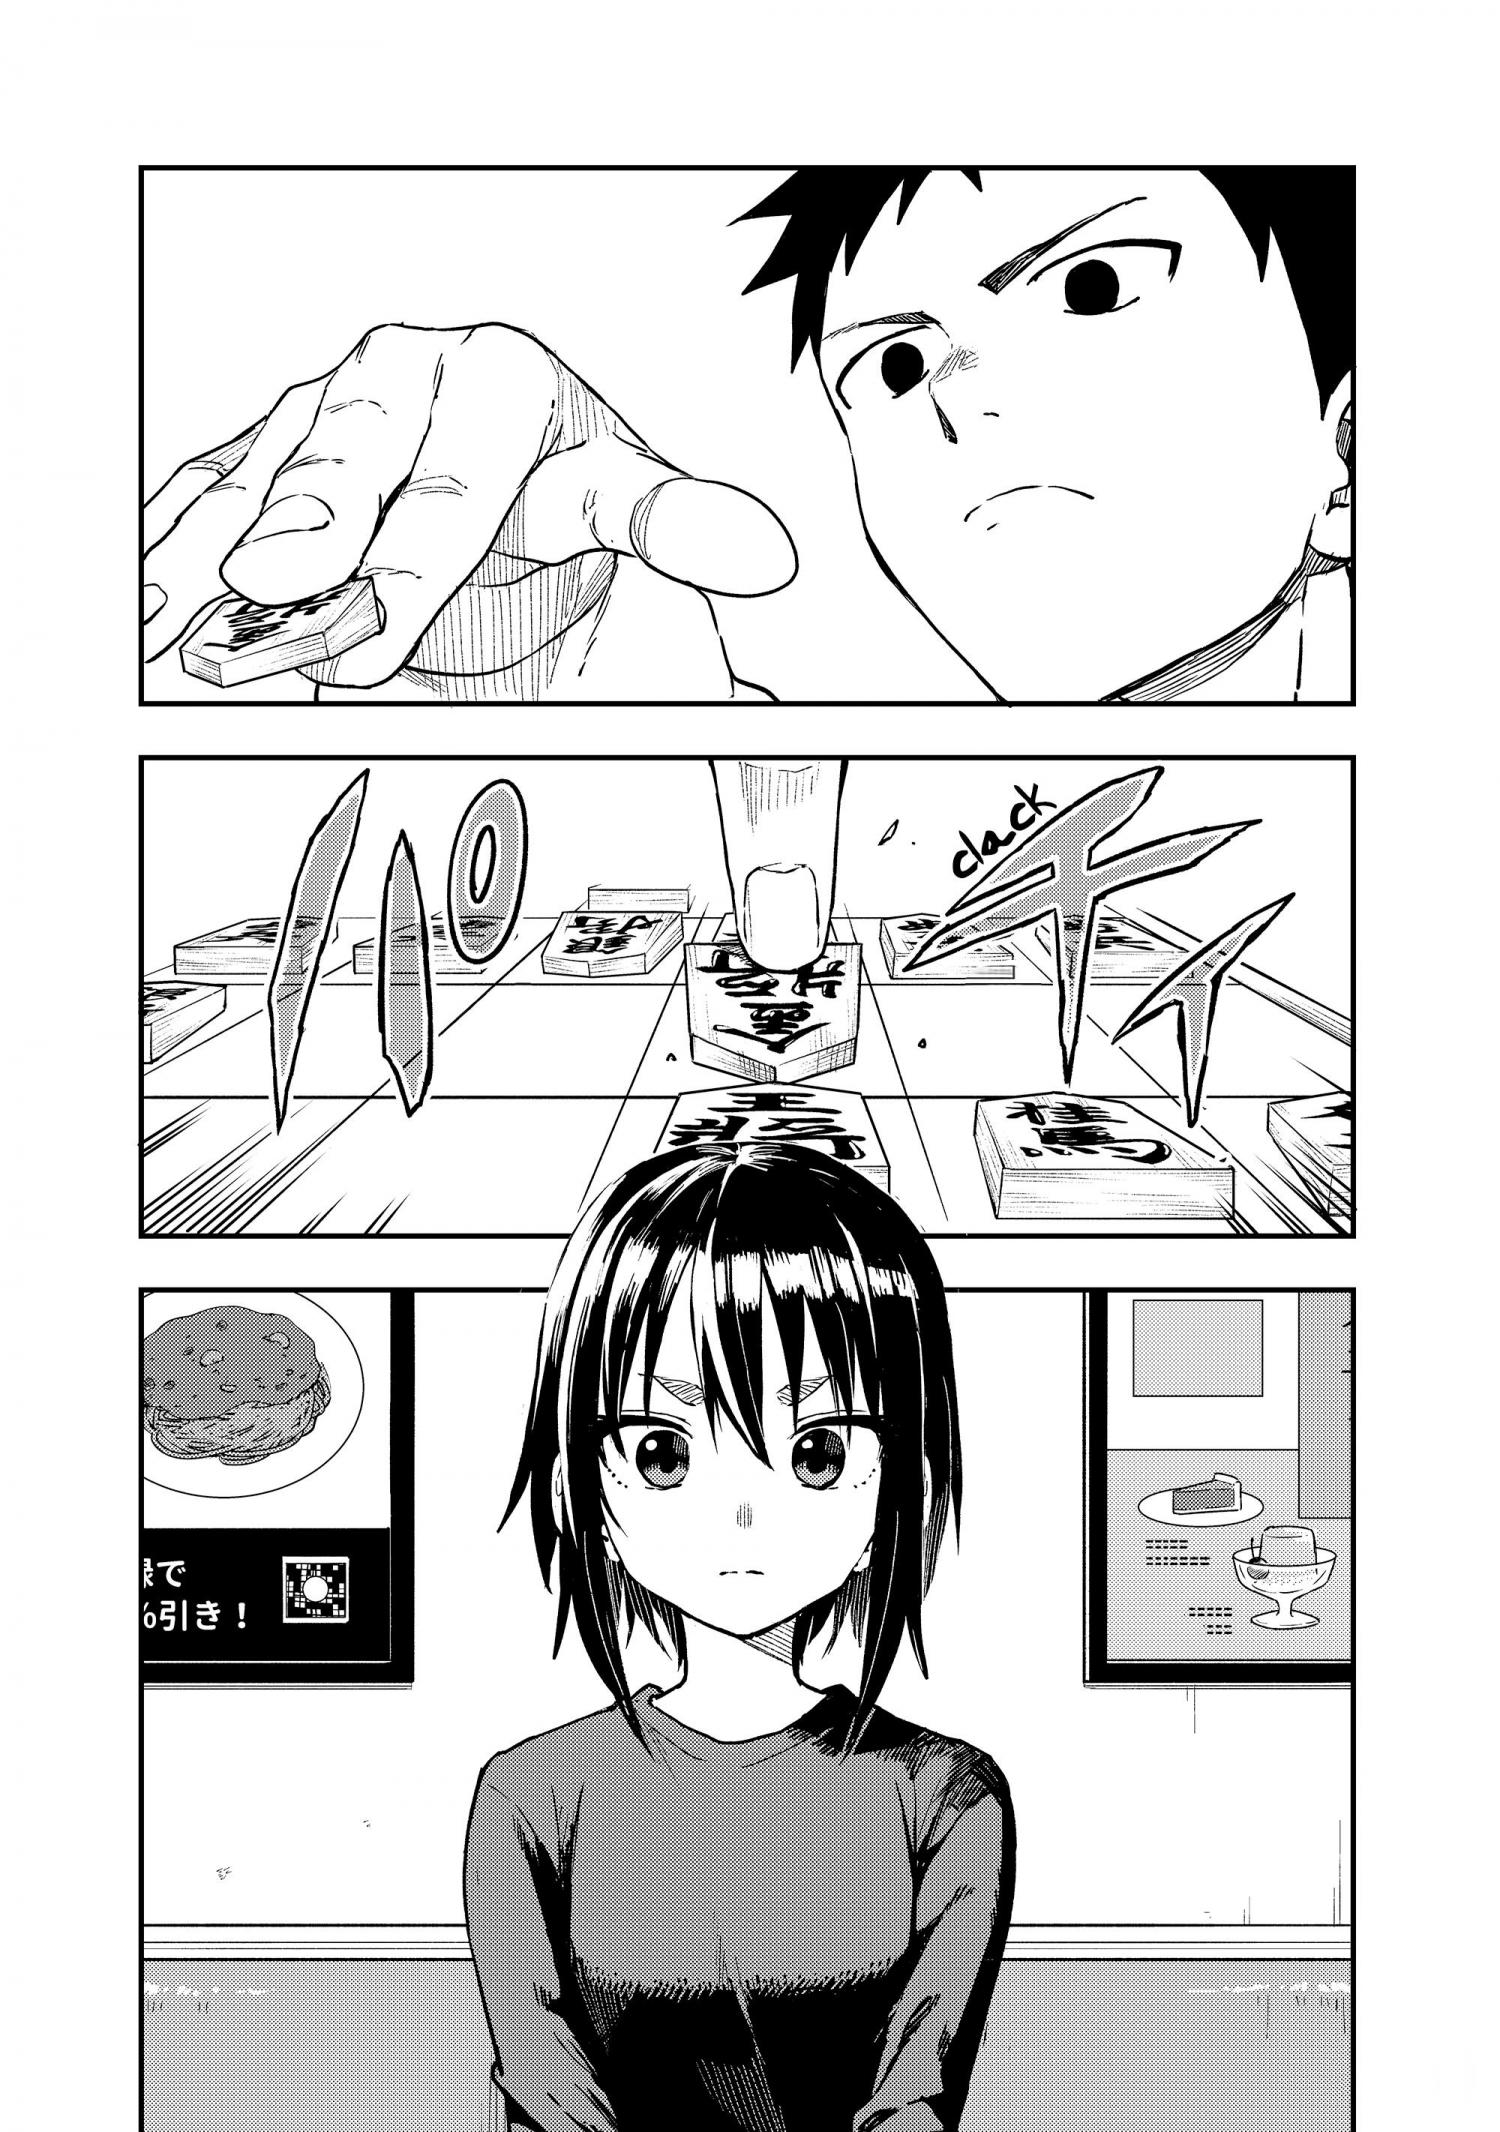 Soredemo Ayumu wa Yosetekuru Vol.12 Ch.166 Page 1 - Mangago